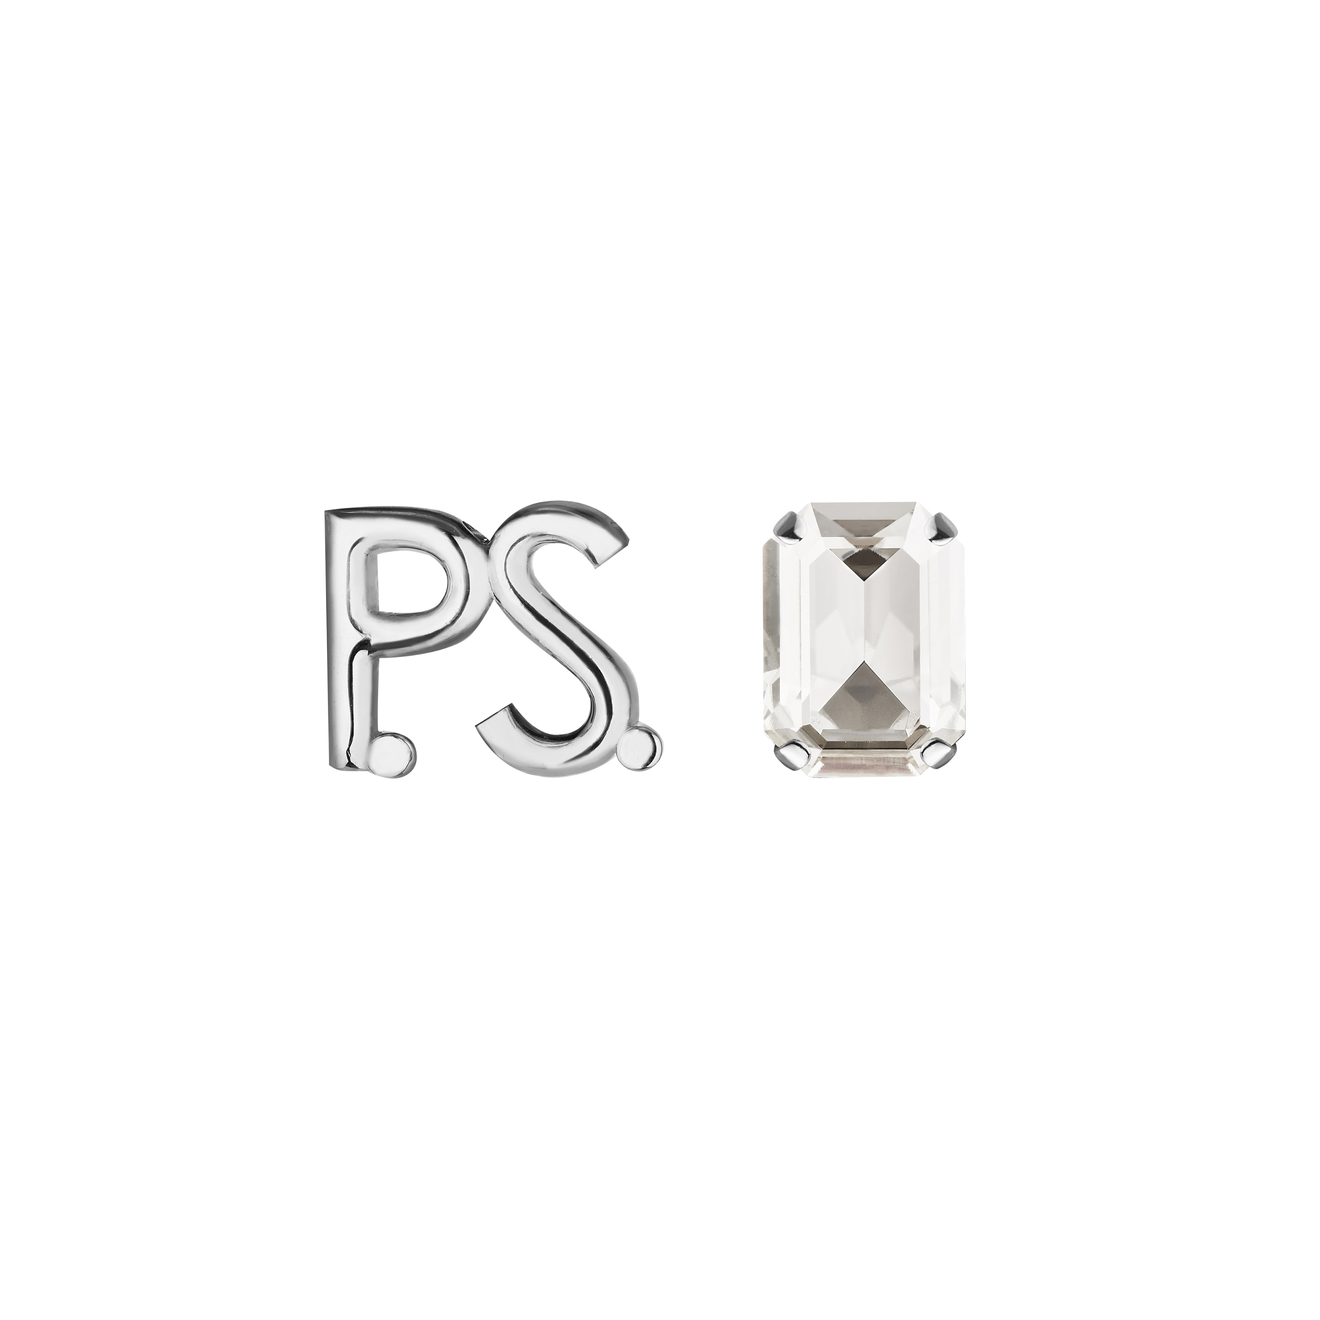 Phenomenal Studio Серьги с фирменным логотипом и крупным кристаллом P.S. Crystal Rhodium серьги phenomenal studio golden sky rhodium